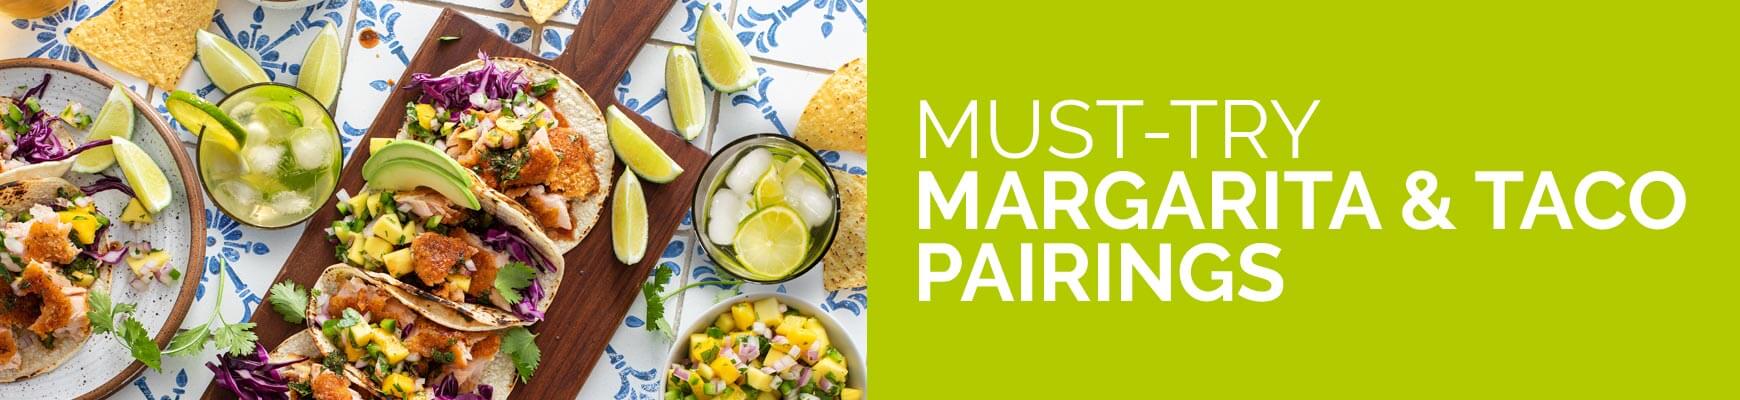 Must-Try Margarita & Taco Pairings